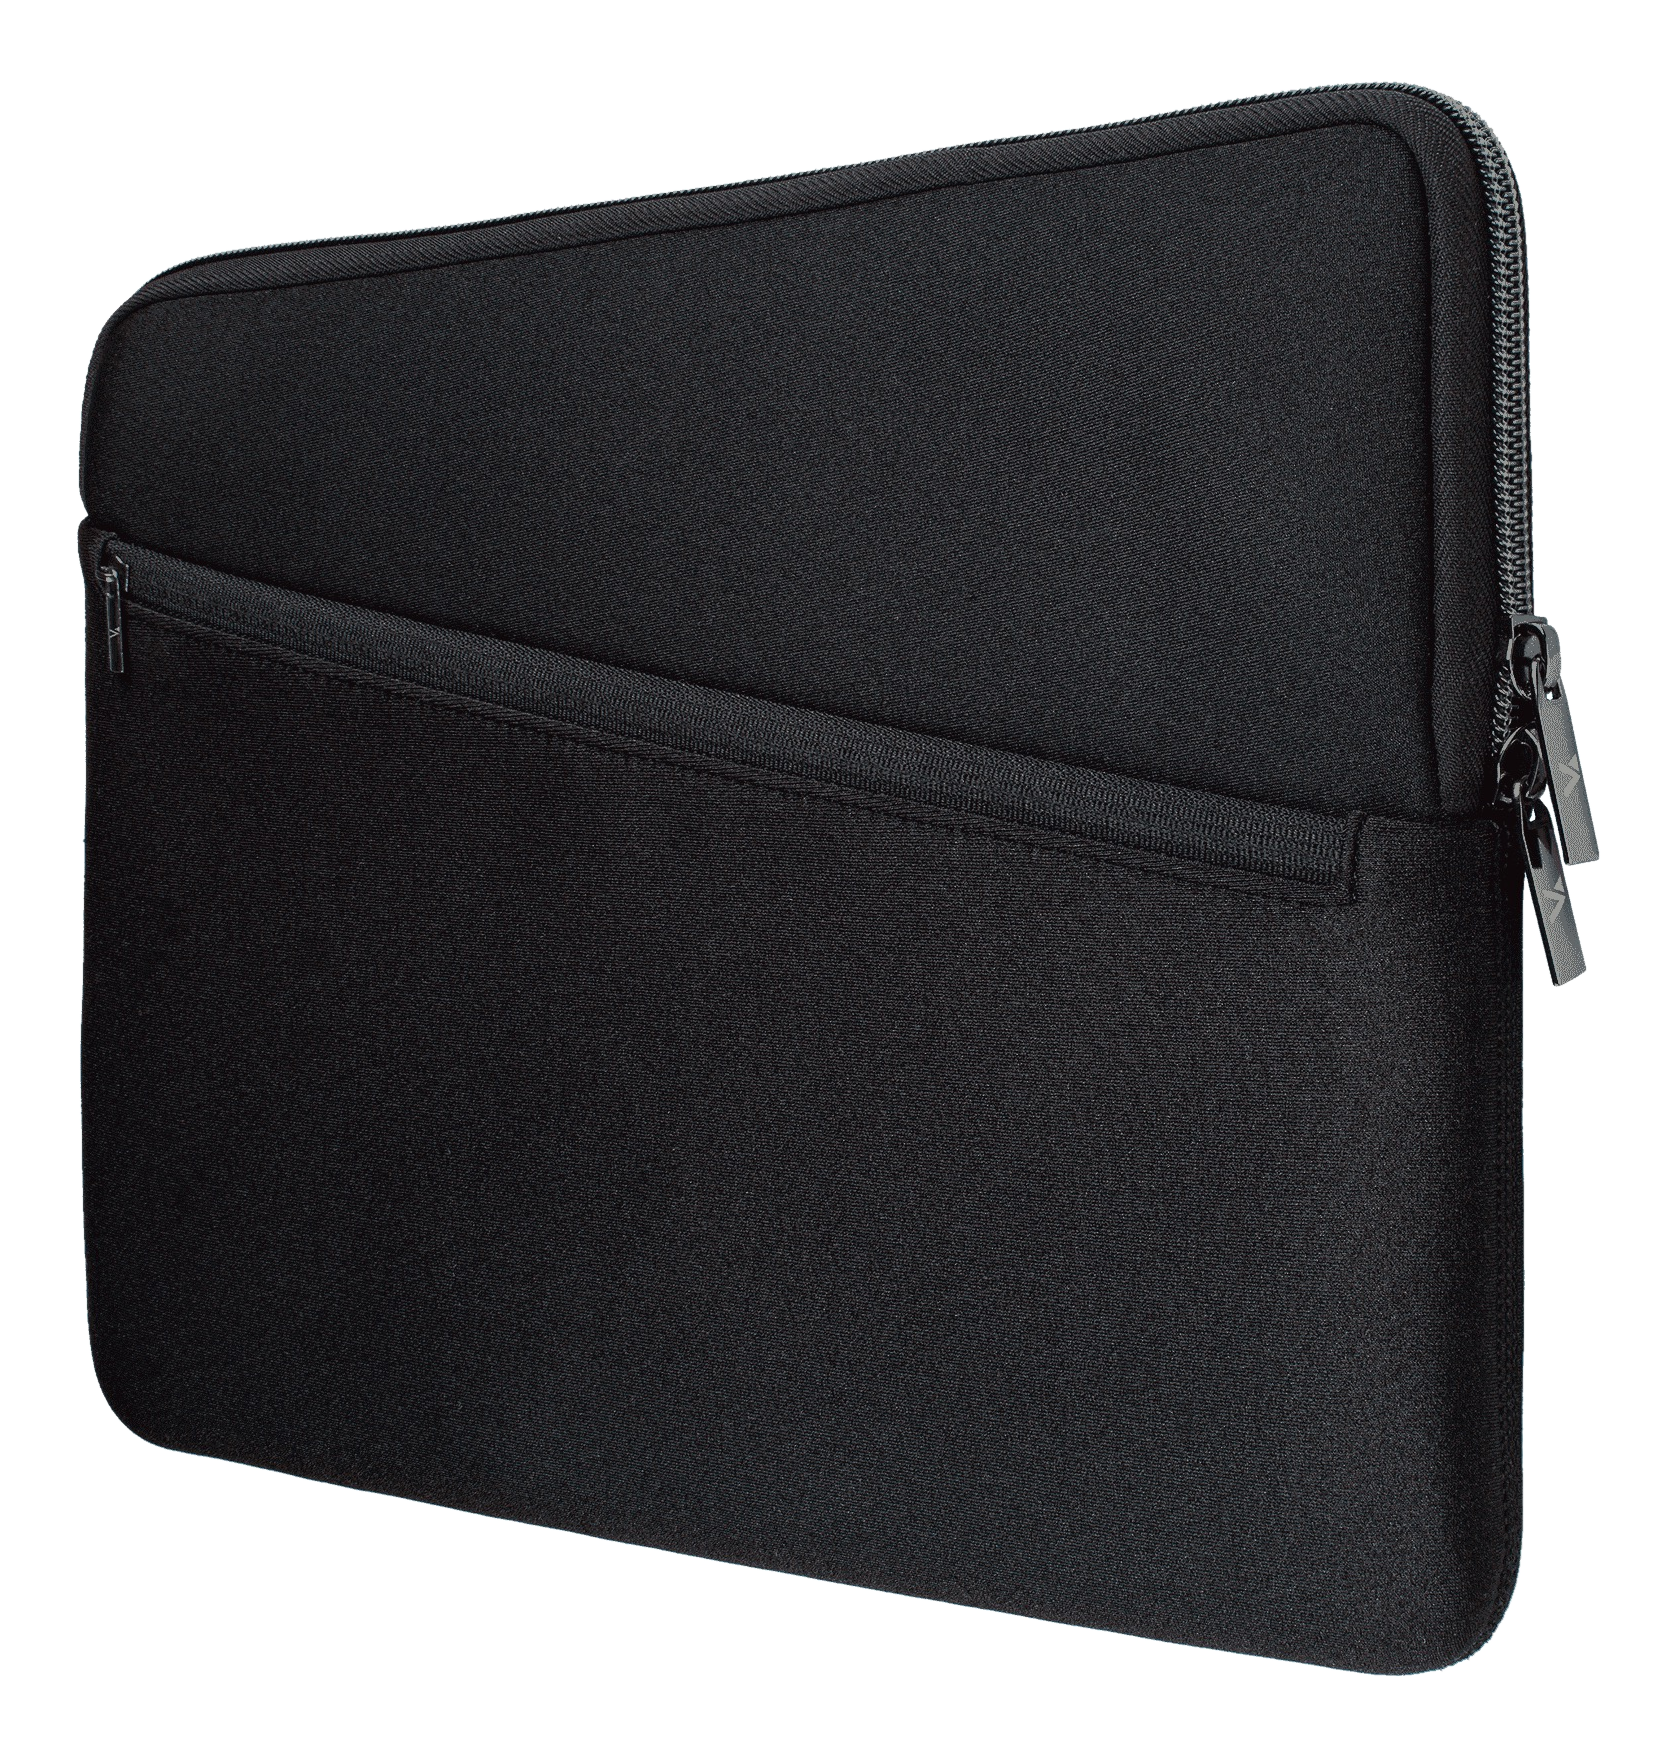 ARTWIZZ Neopren Sleeve Pro - Notebook-Hülle, MacBook, Universal, 14 "/36.87 cm, Schwarz